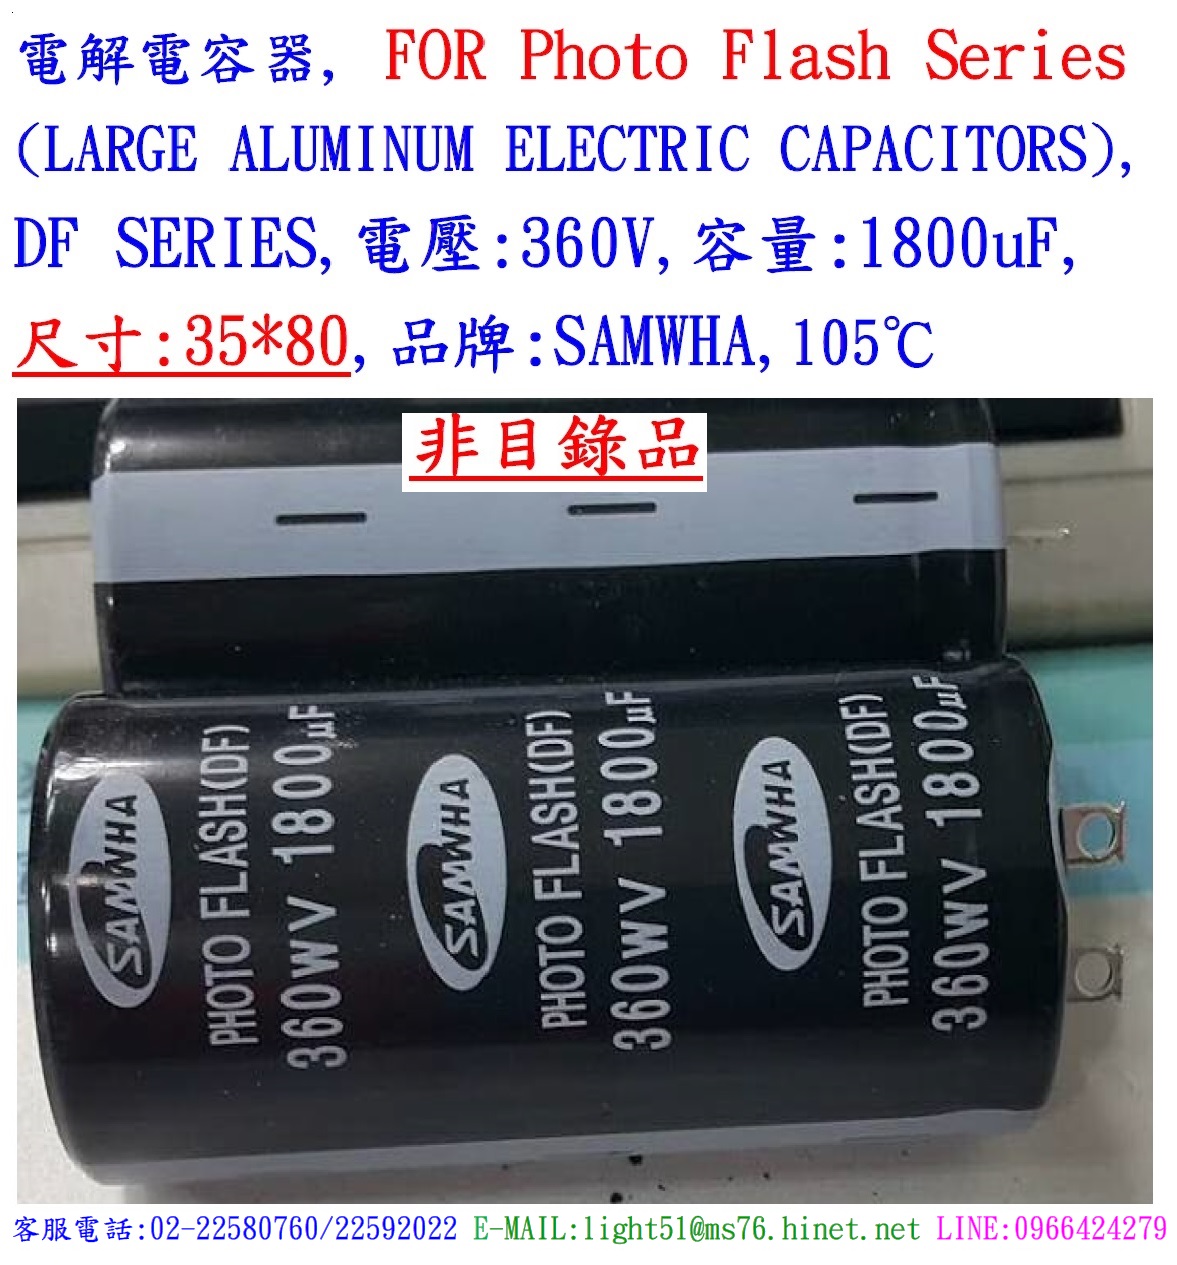 DF,360V,1800uF,尺寸35*80,電解電容器(Photo Flash),SAMWAH(韓國)